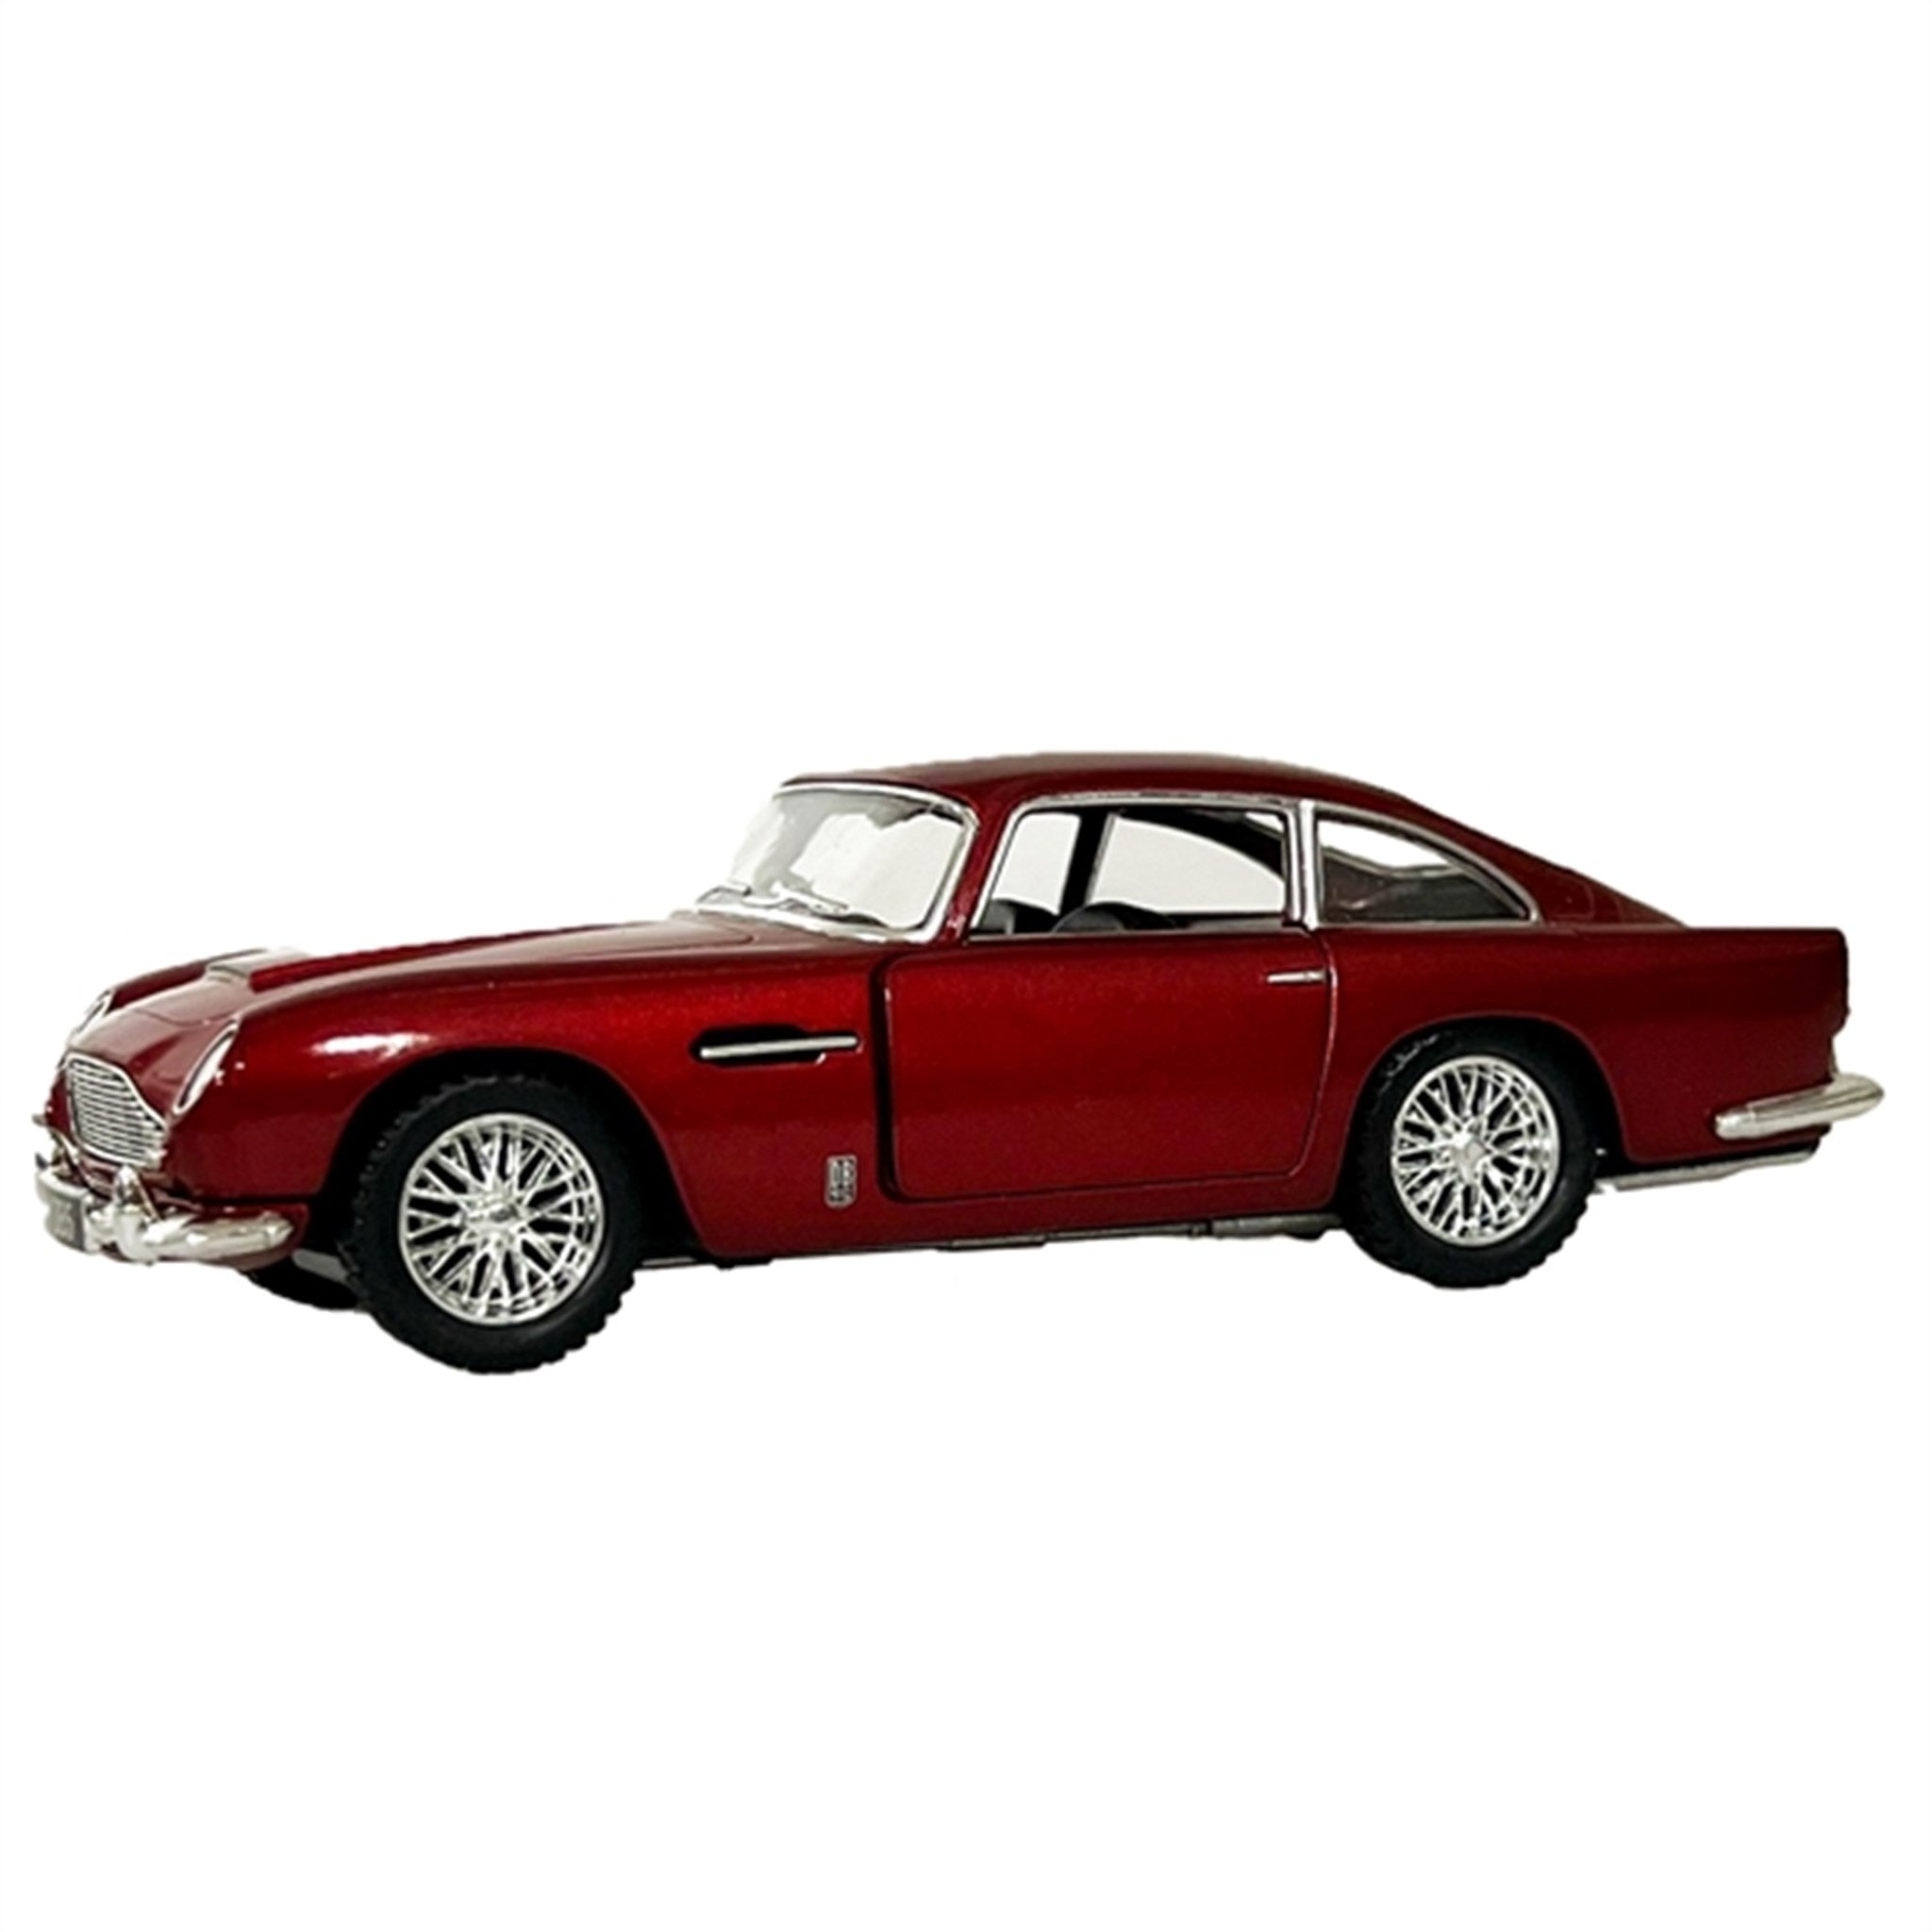 Magni Aston Martin - Red